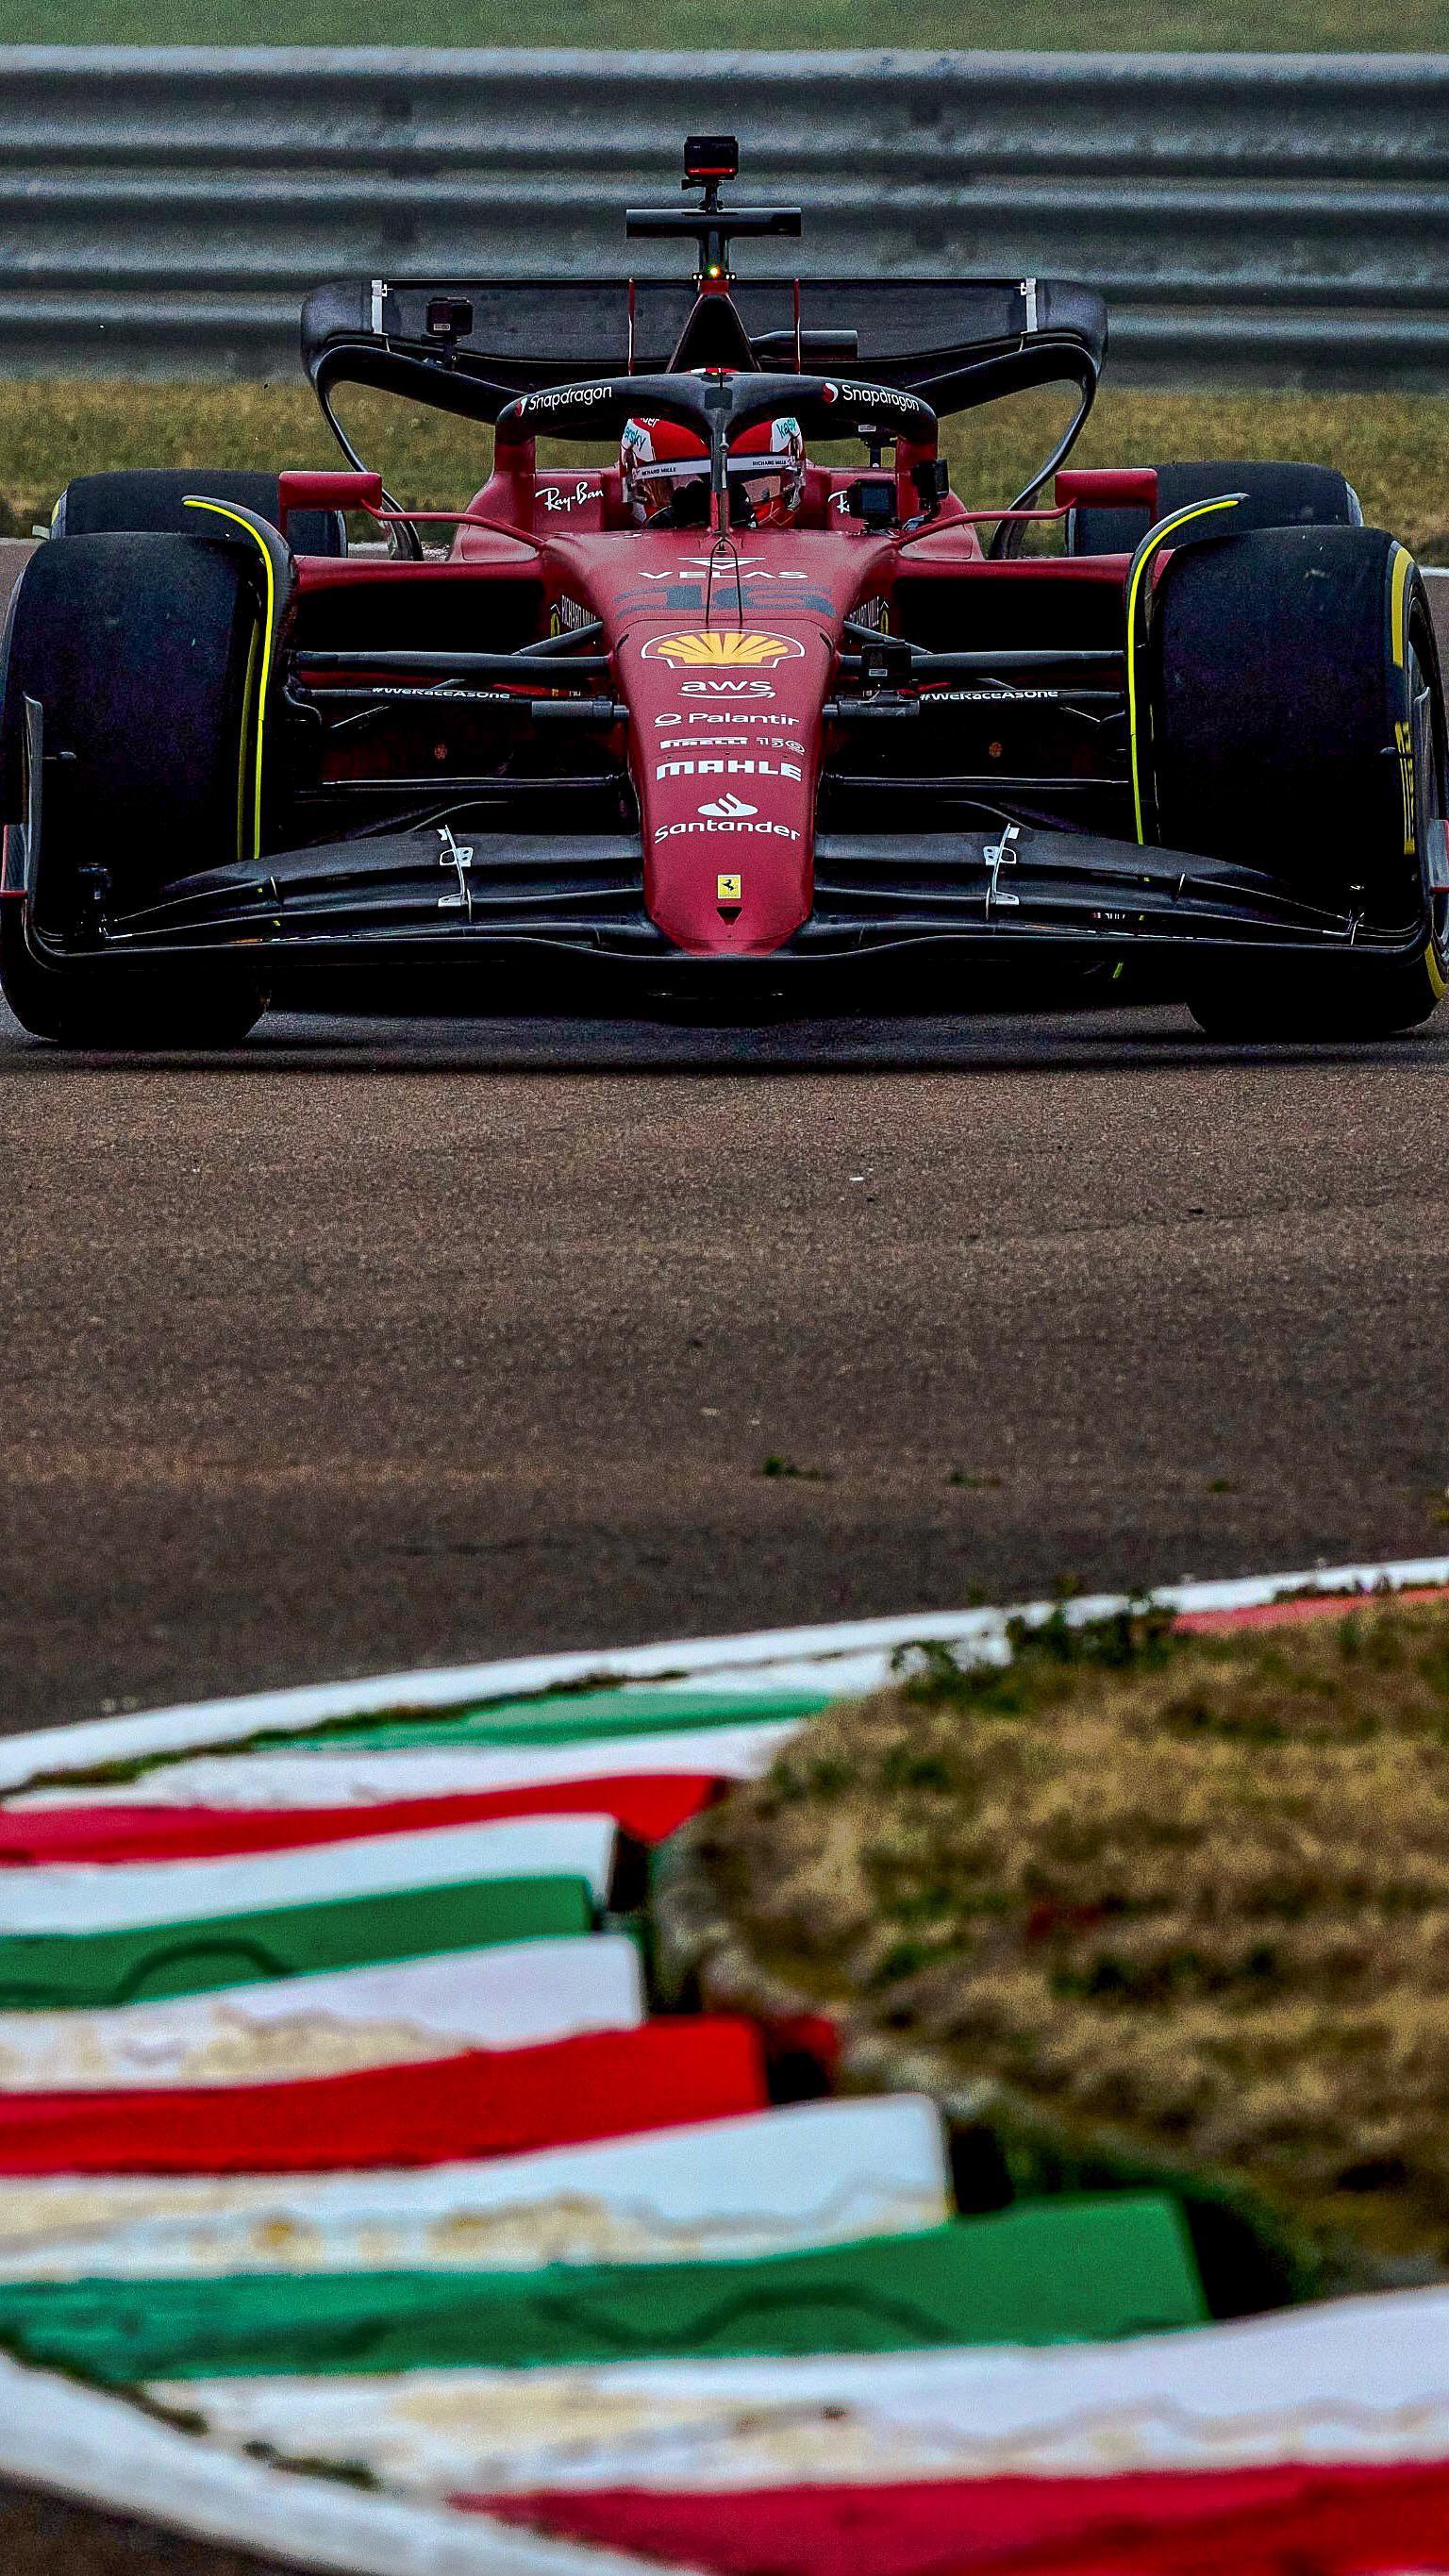 HD wallpaper Ferrari Formula 1 car sports car  Wallpaper Flare